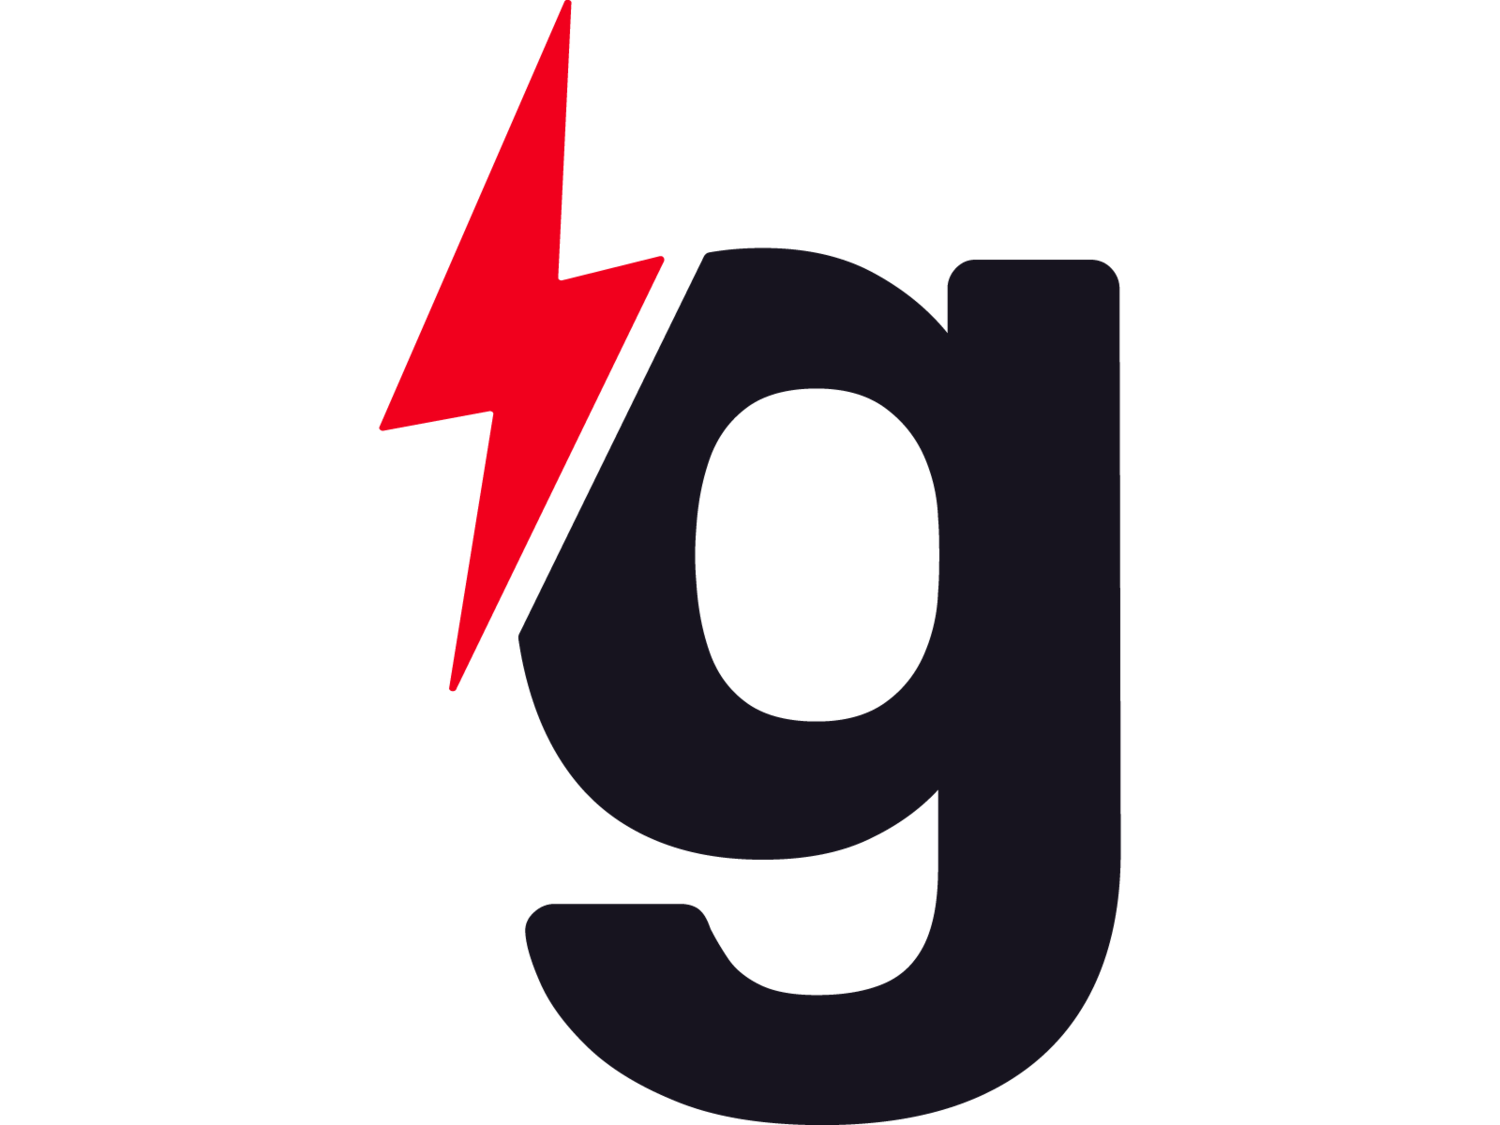 gener8tor